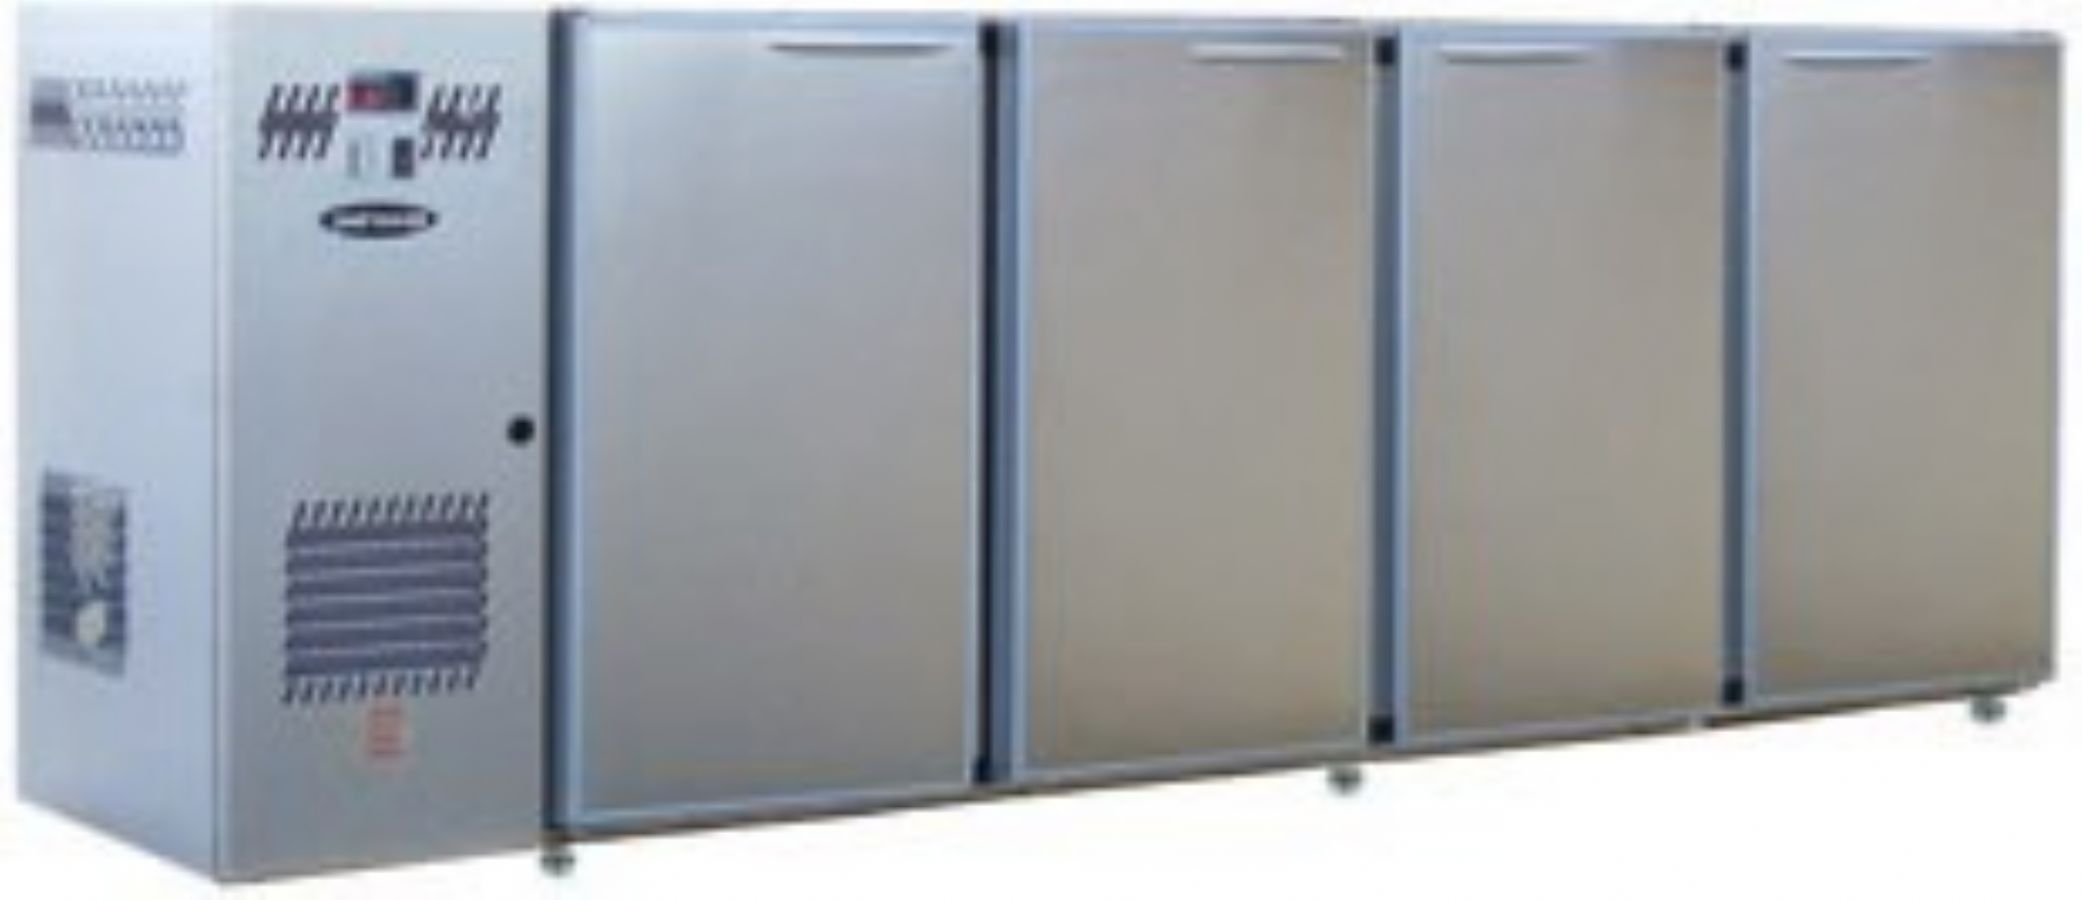 Arrire-bar Inox - Srie CLASSIC - Groupe log - 4 larges portes pleines - 722 litres - U54LI